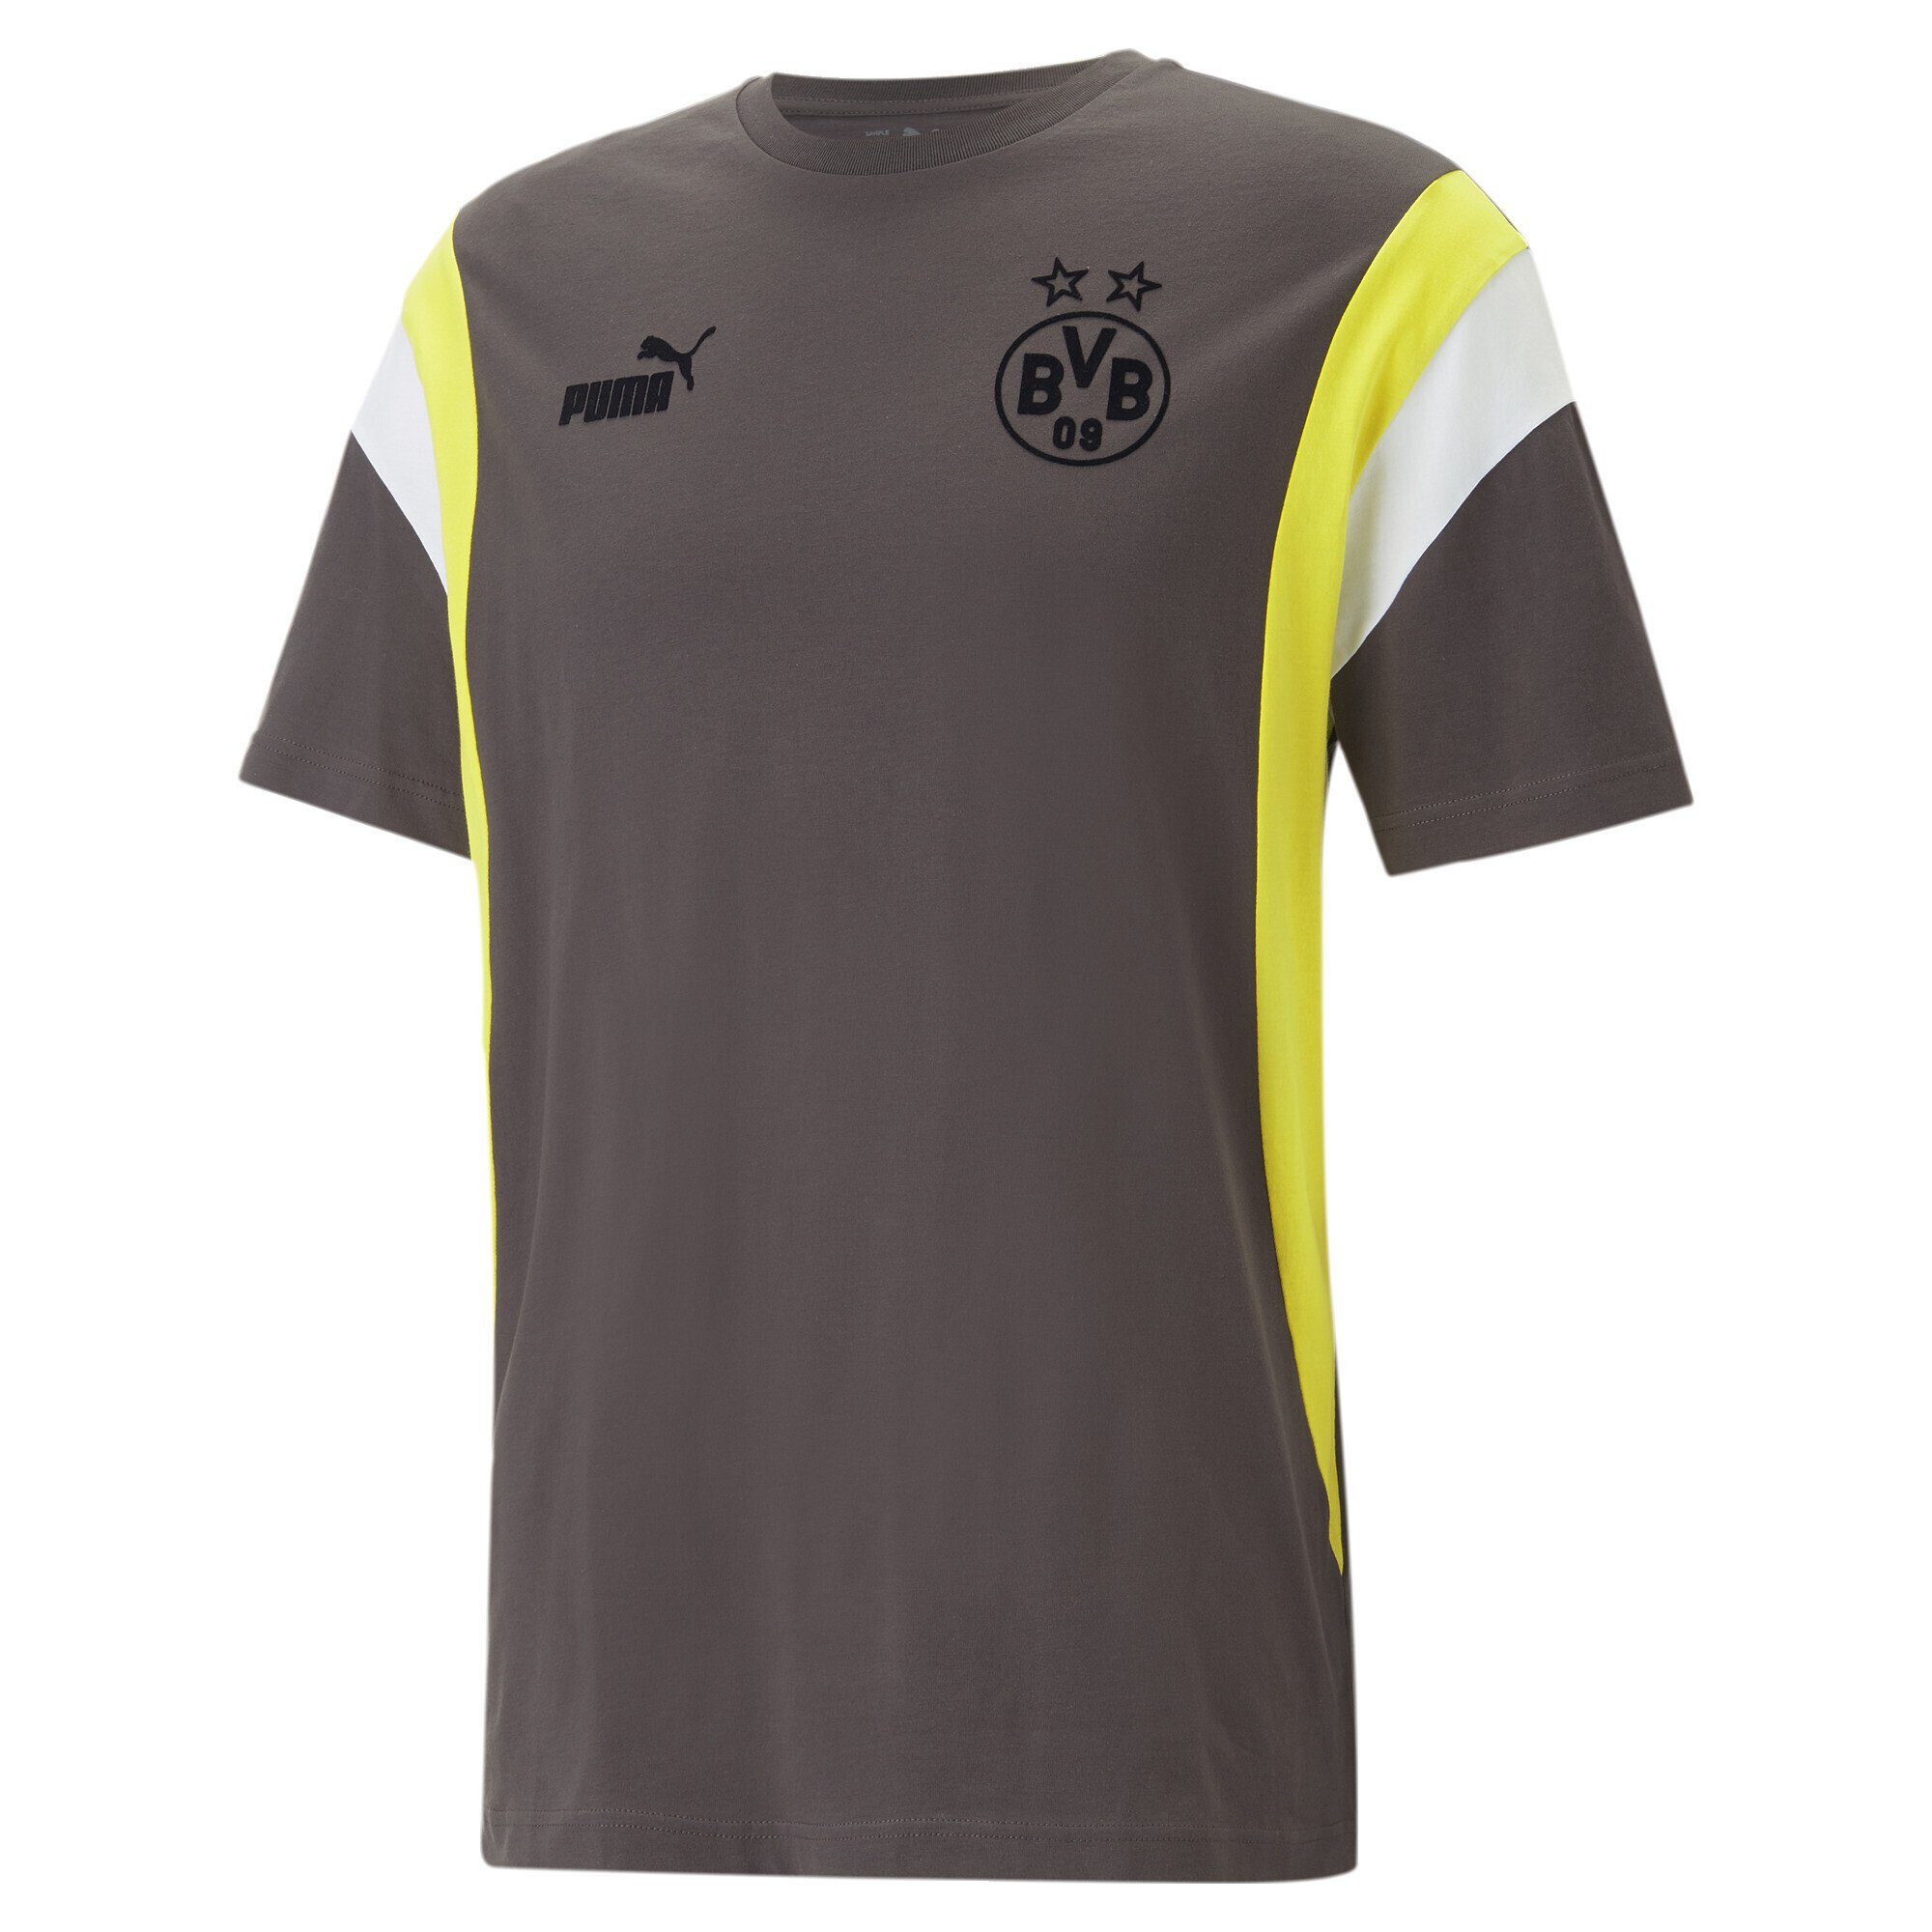 PUMA T-Shirt Borussia Dortmund ftblARCHIVE T-Shirt Herren Flat Dark Gray Cyber Yellow